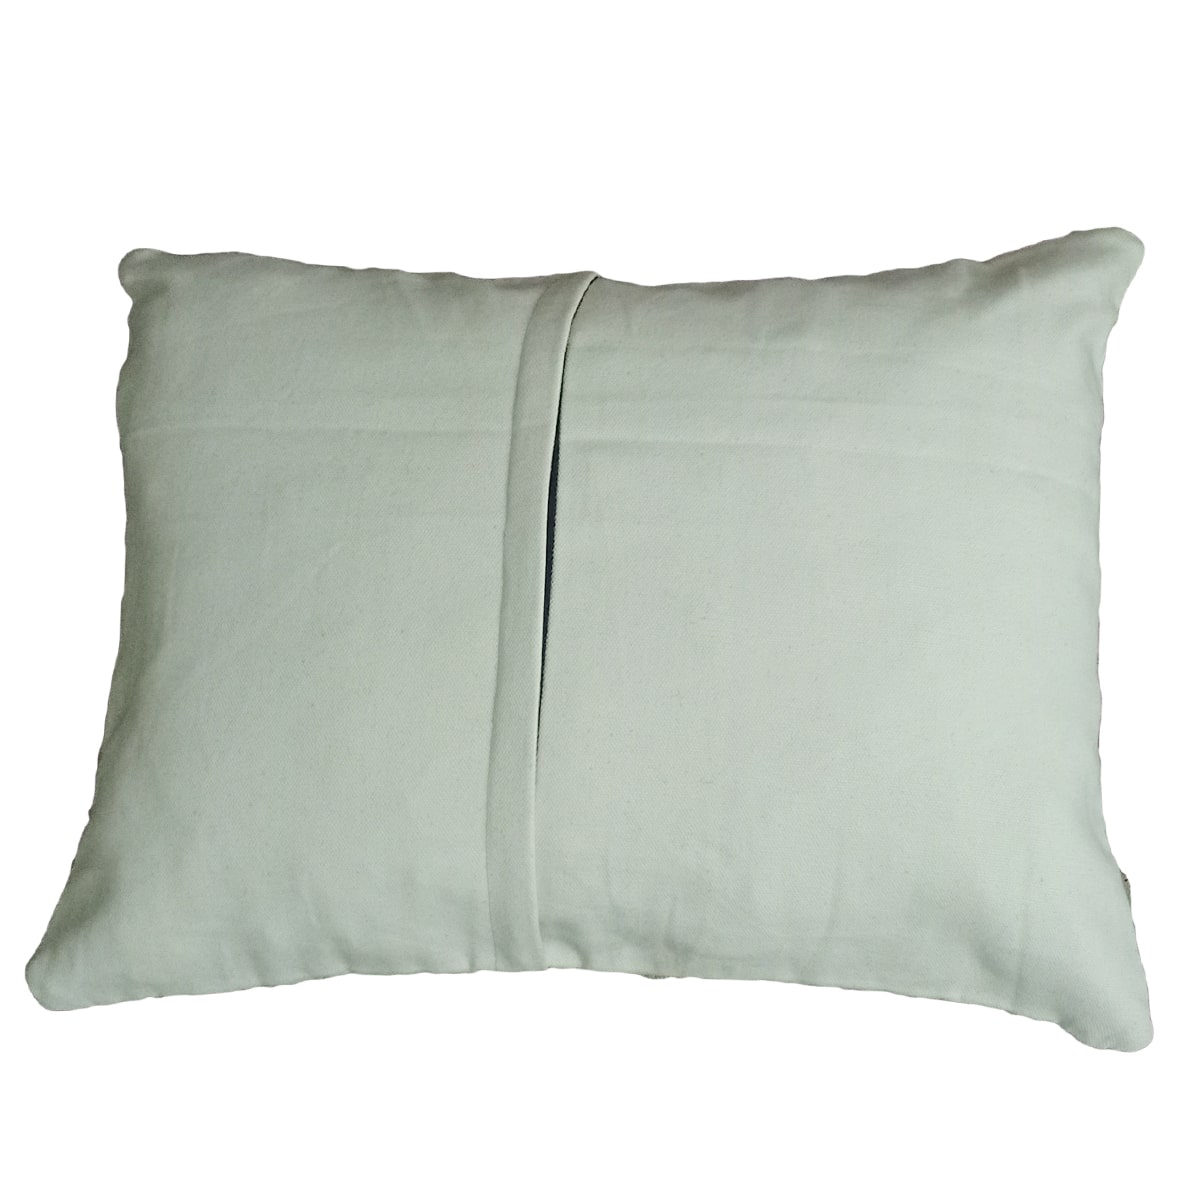 Kilim Handwoven Brown Cushion Cover